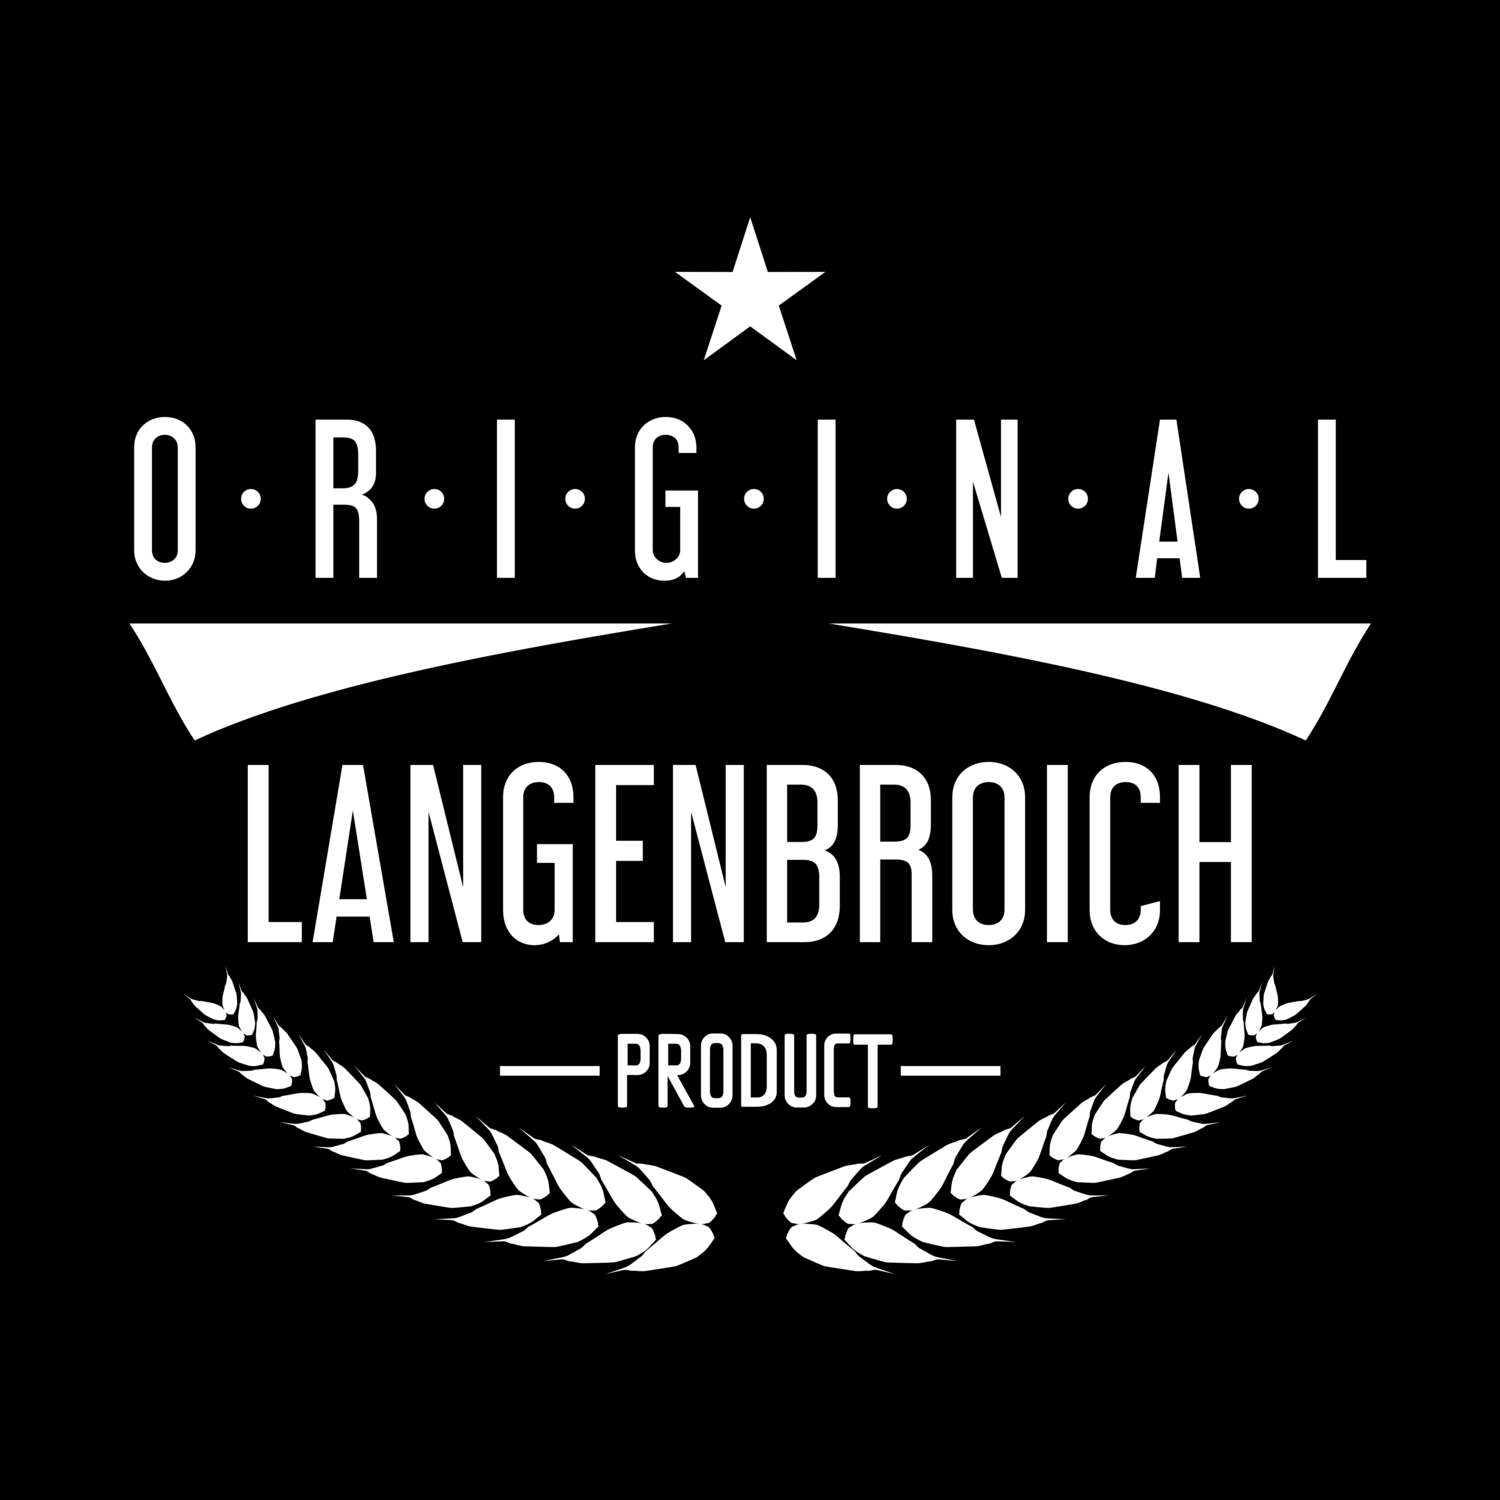 Langenbroich T-Shirt »Original Product«